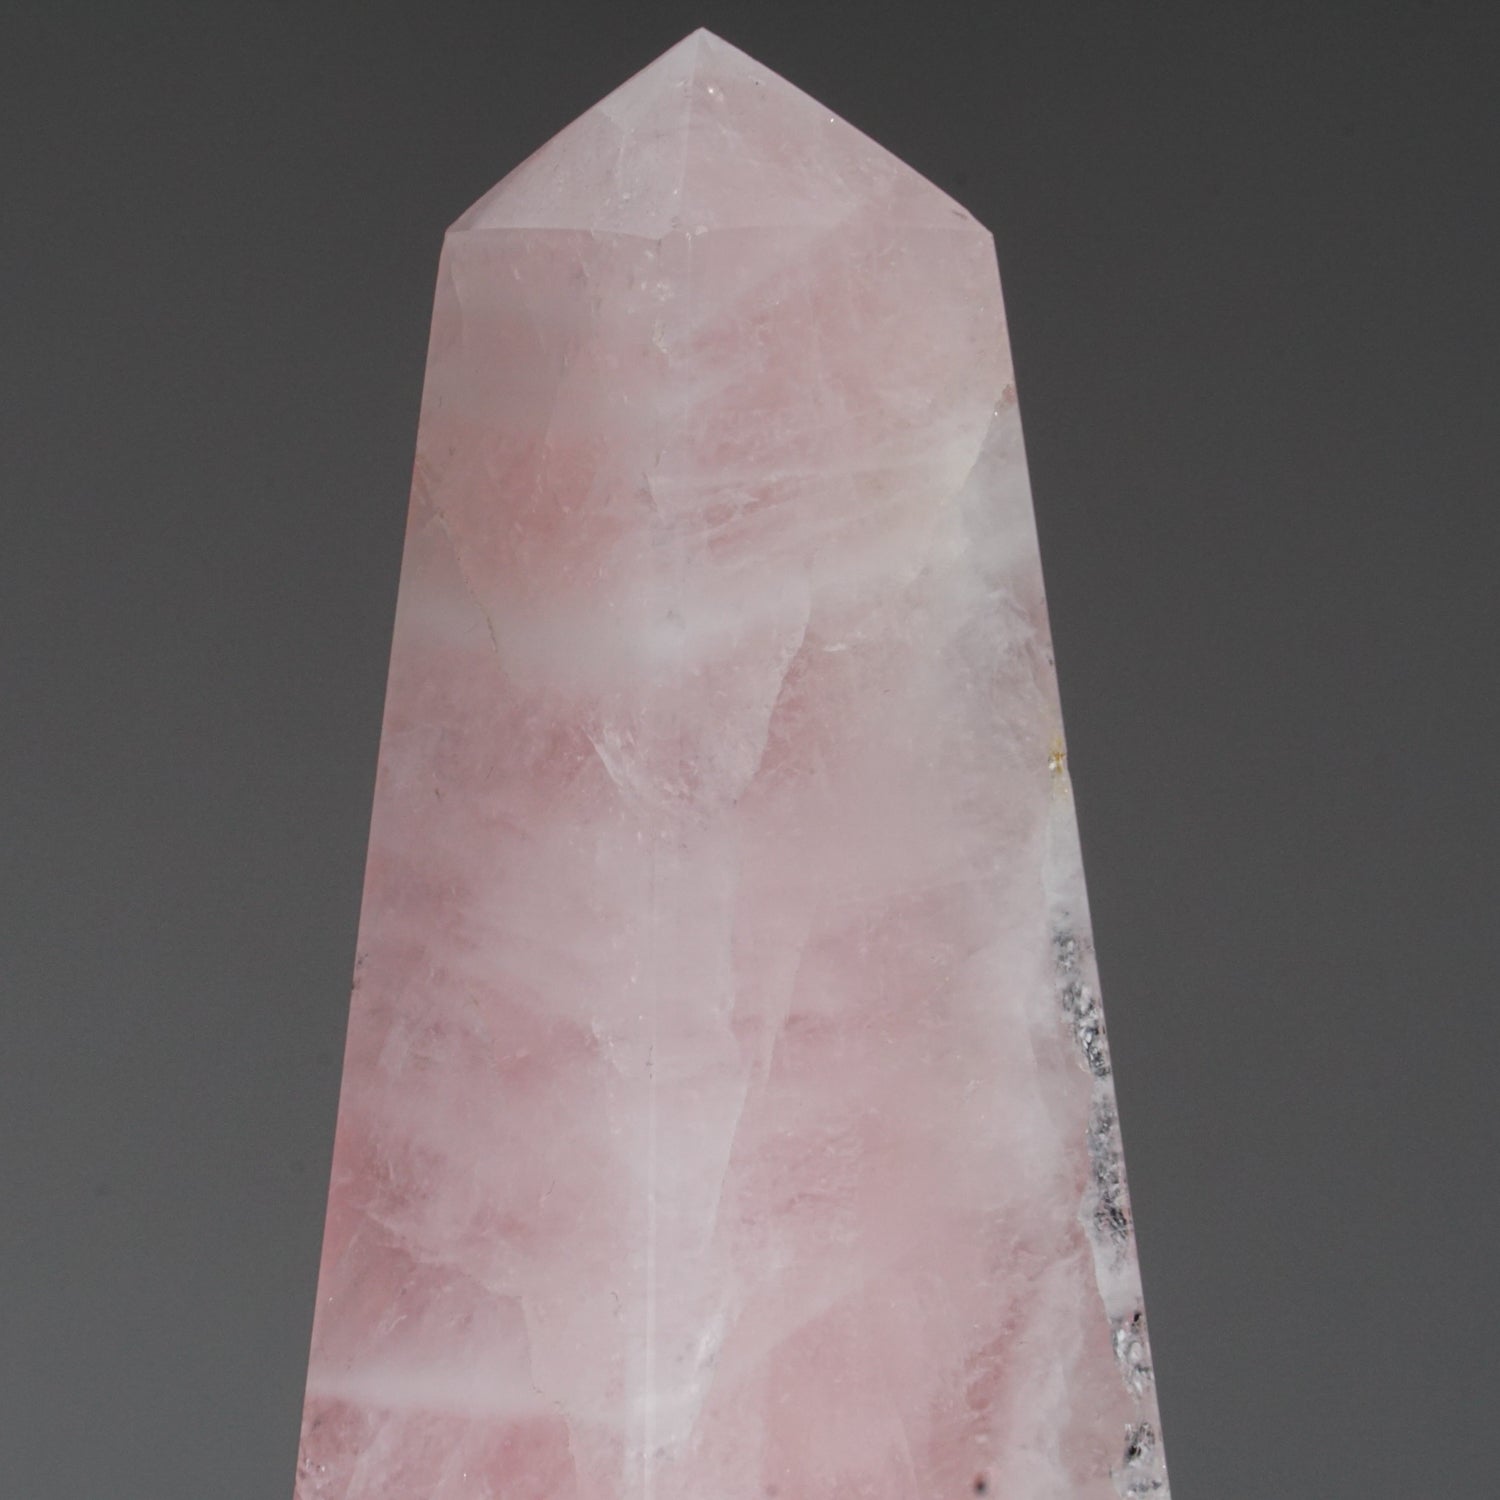 Polished Rose Quartz Obelisk from Brazil (3 lbs)